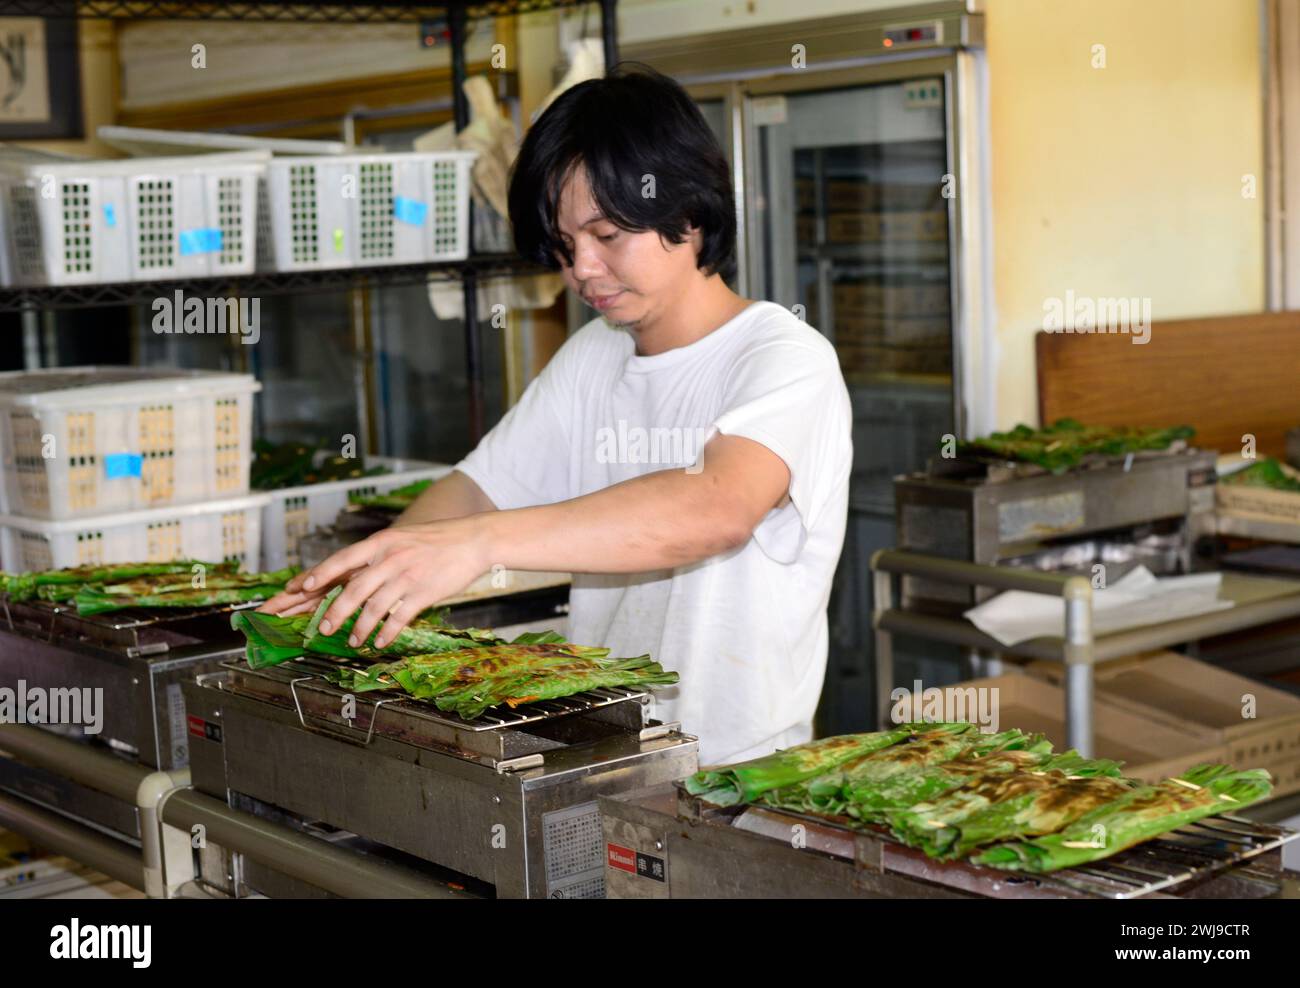 Ein Mann, der Otak-Otak grillt, einen südostasiatischen Fischkuchen, in Bananenblatt gewickelt. Stockfoto